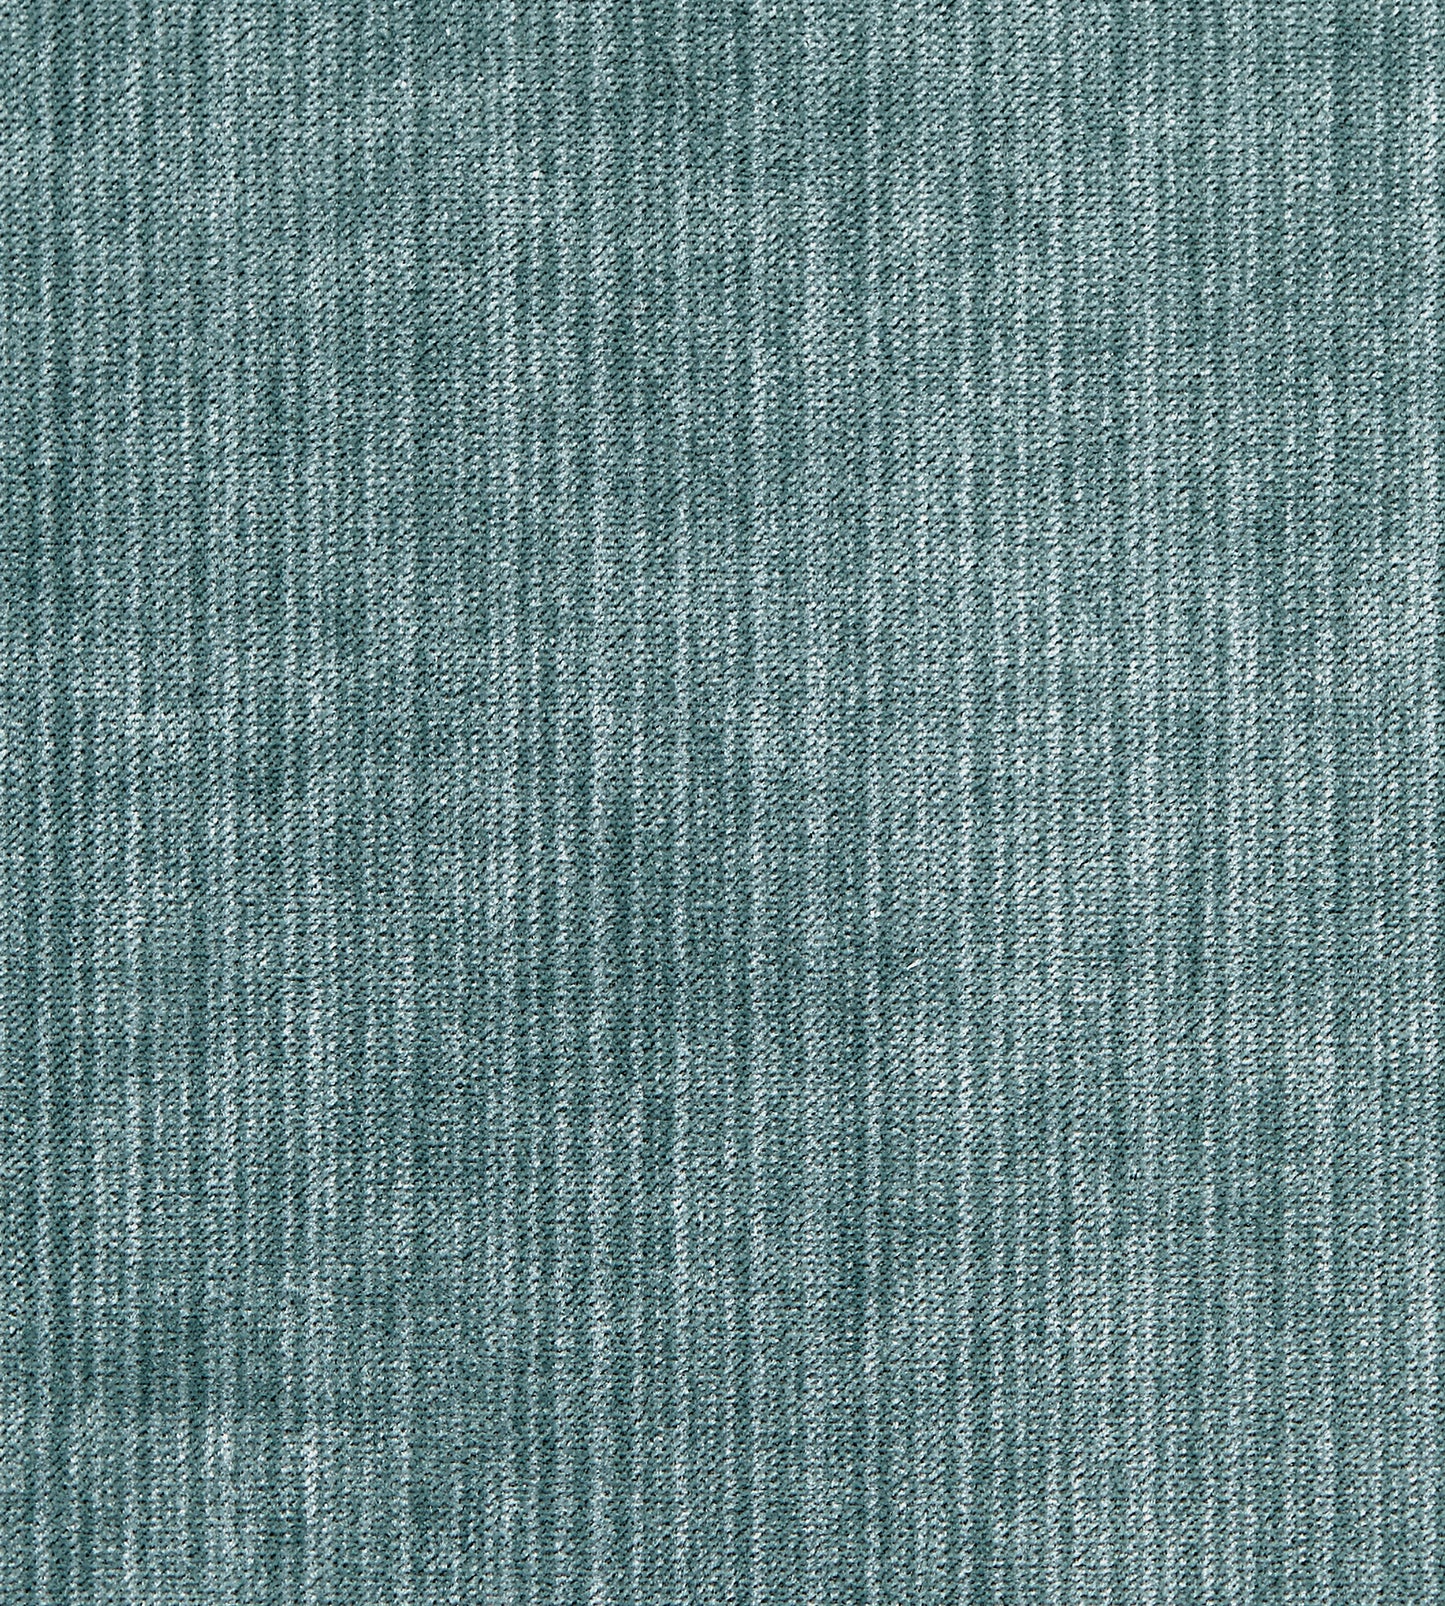 Purchase Boris Kroll Fabric Pattern number SC 0008K65111, Strie Velvet Mineral 1